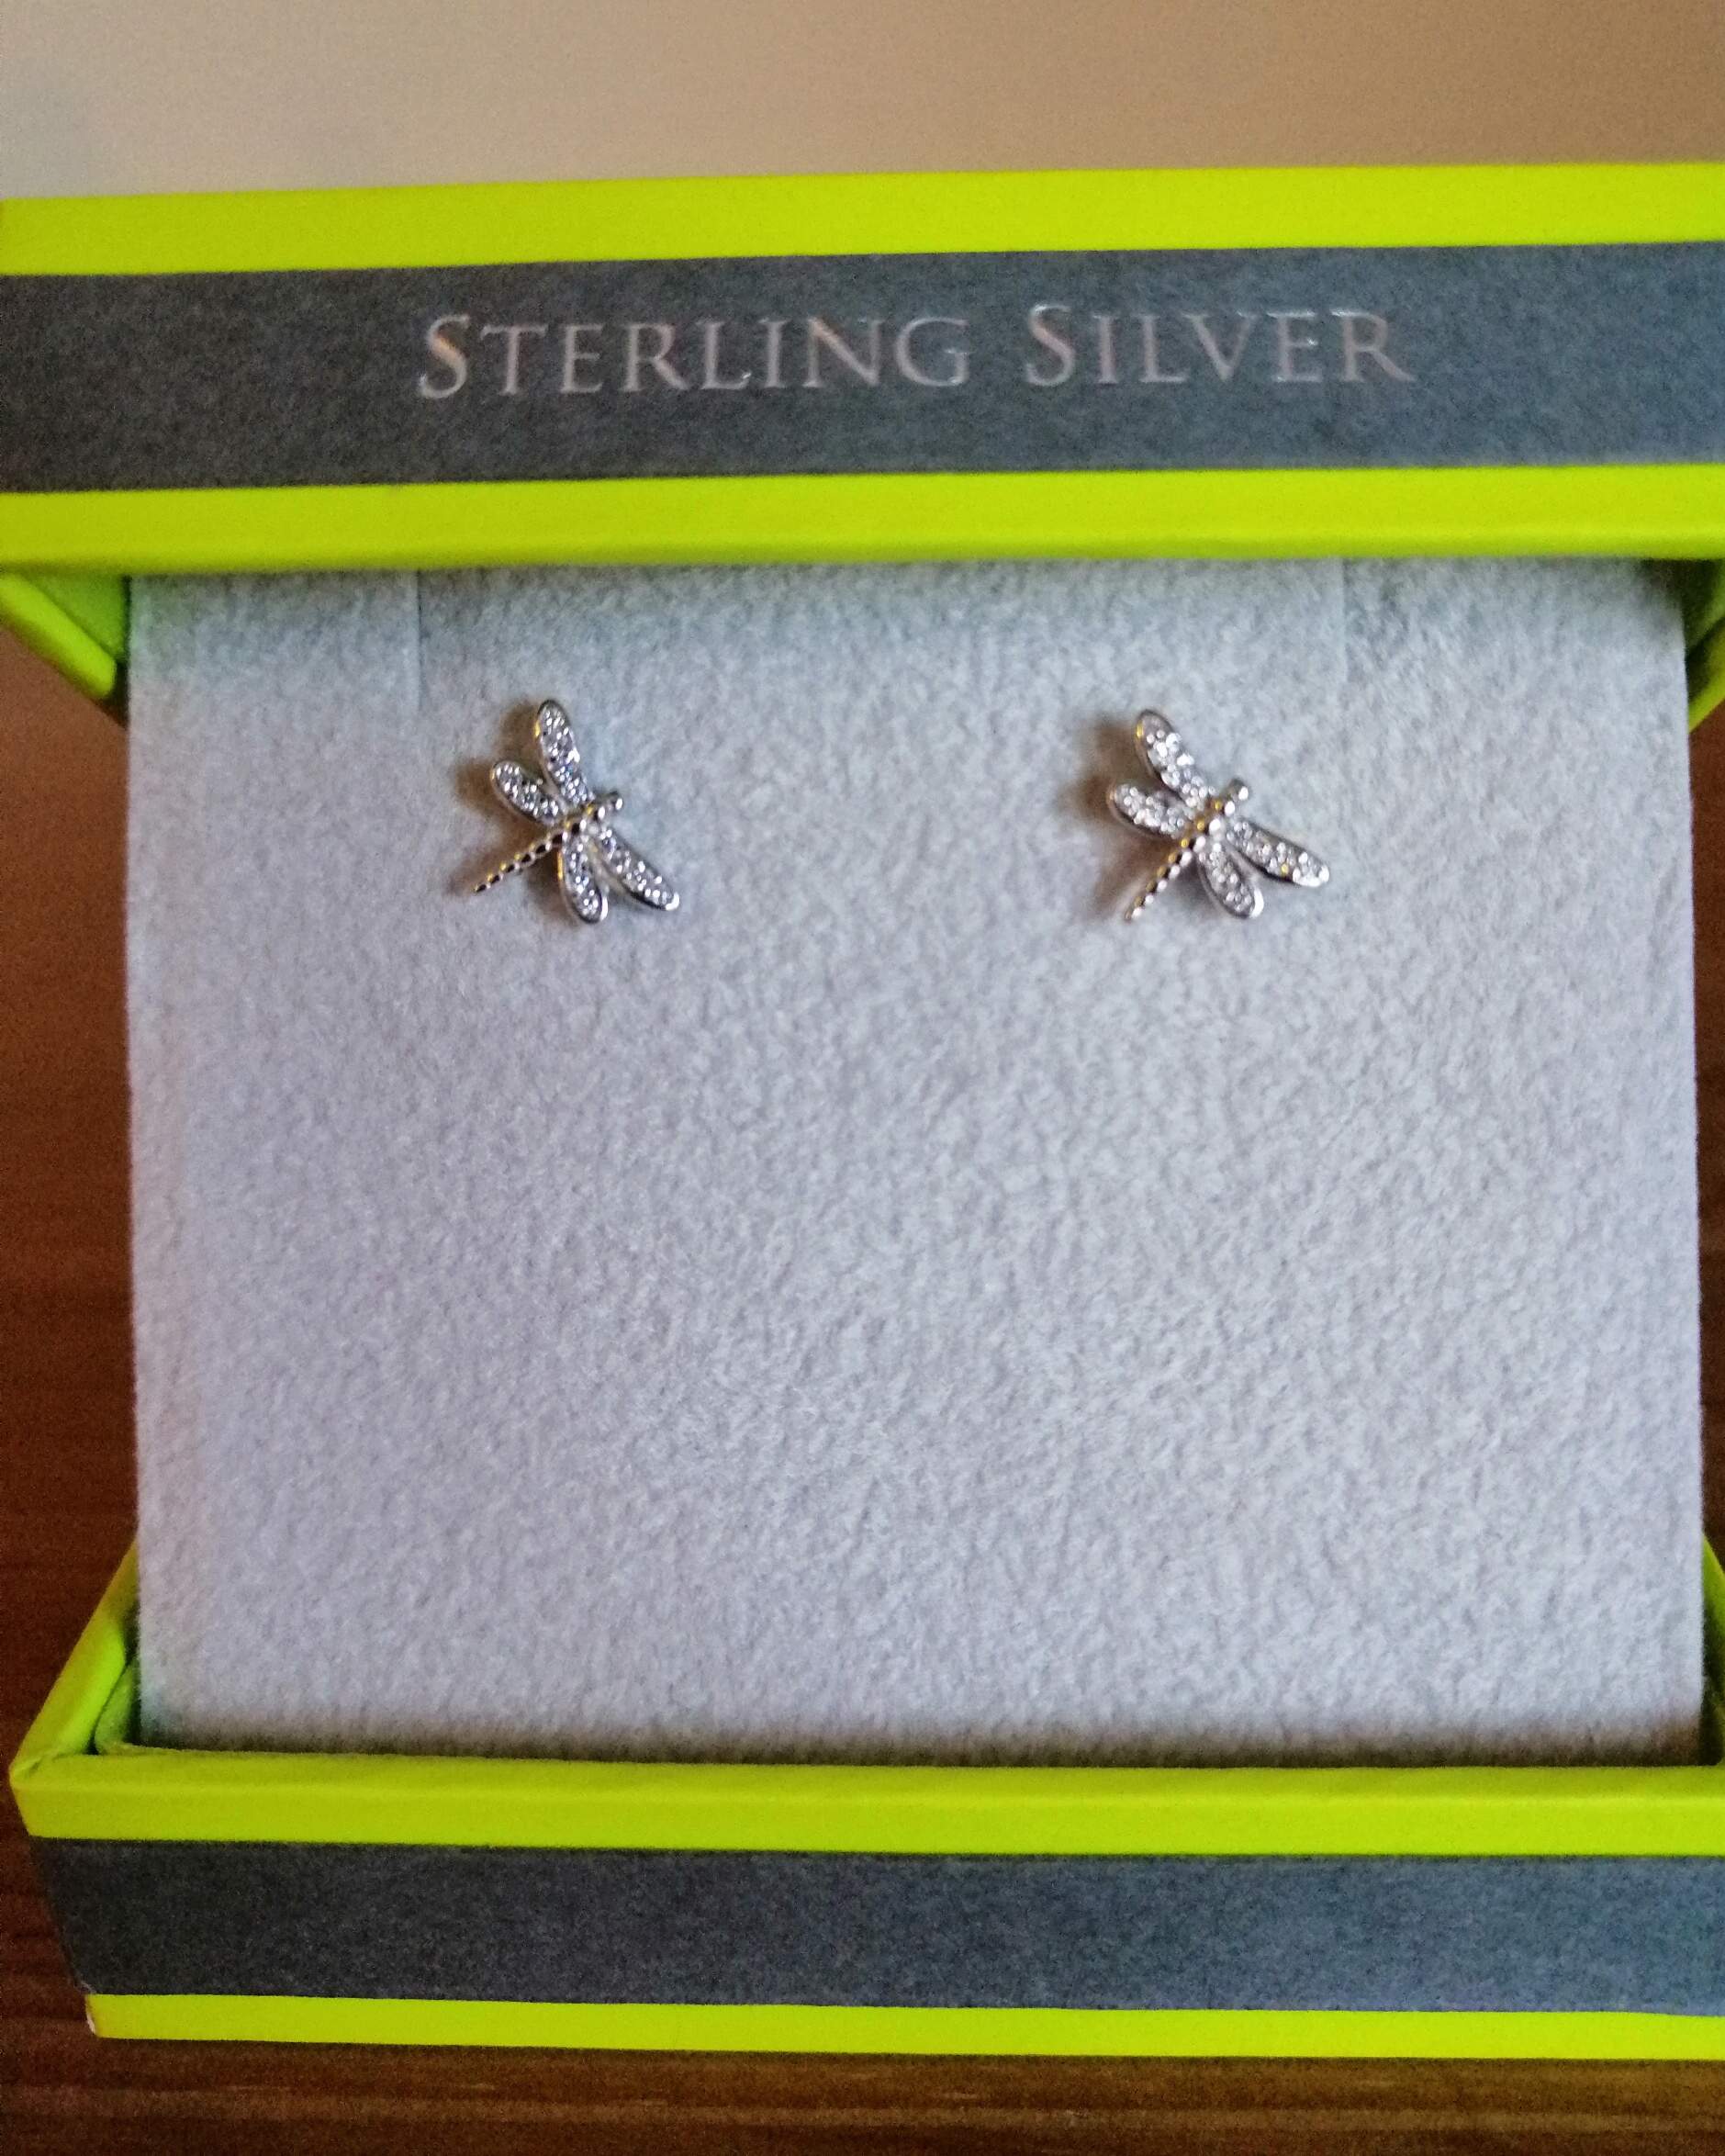 Sterling Silver Jewellery by Reeves & Reeves